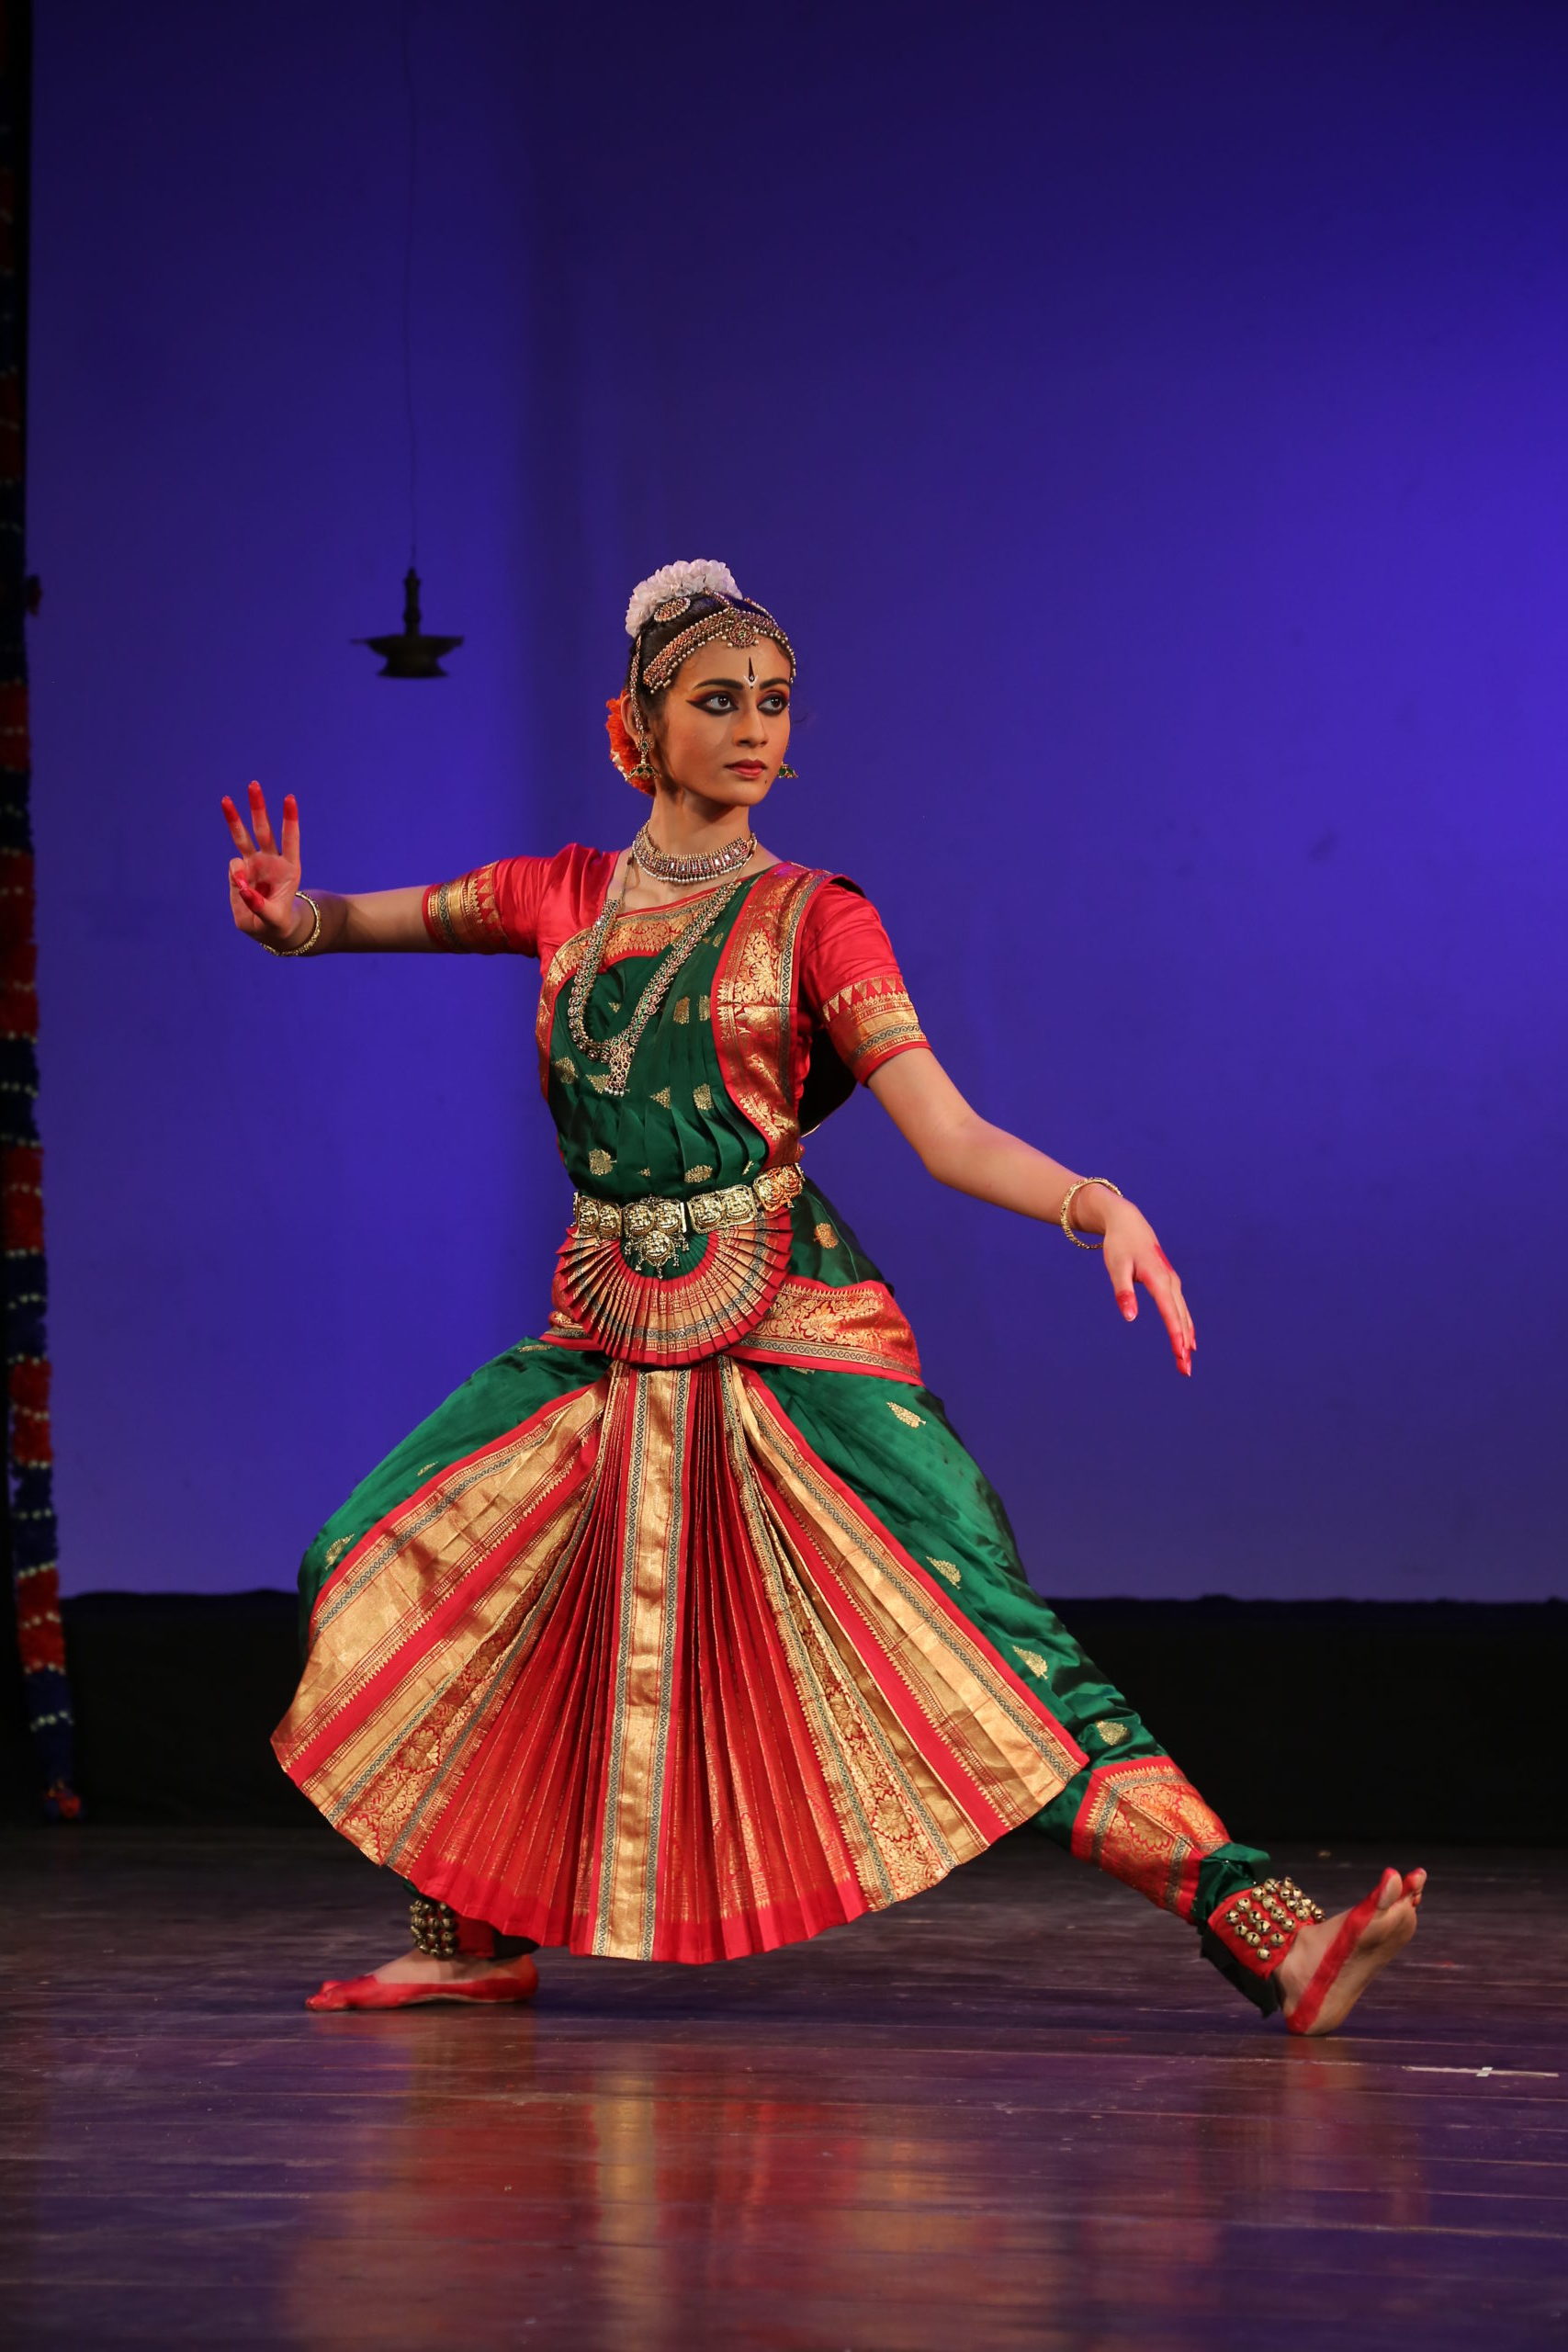 Premium Photo | Indian classical dance bharatanatyam dancer